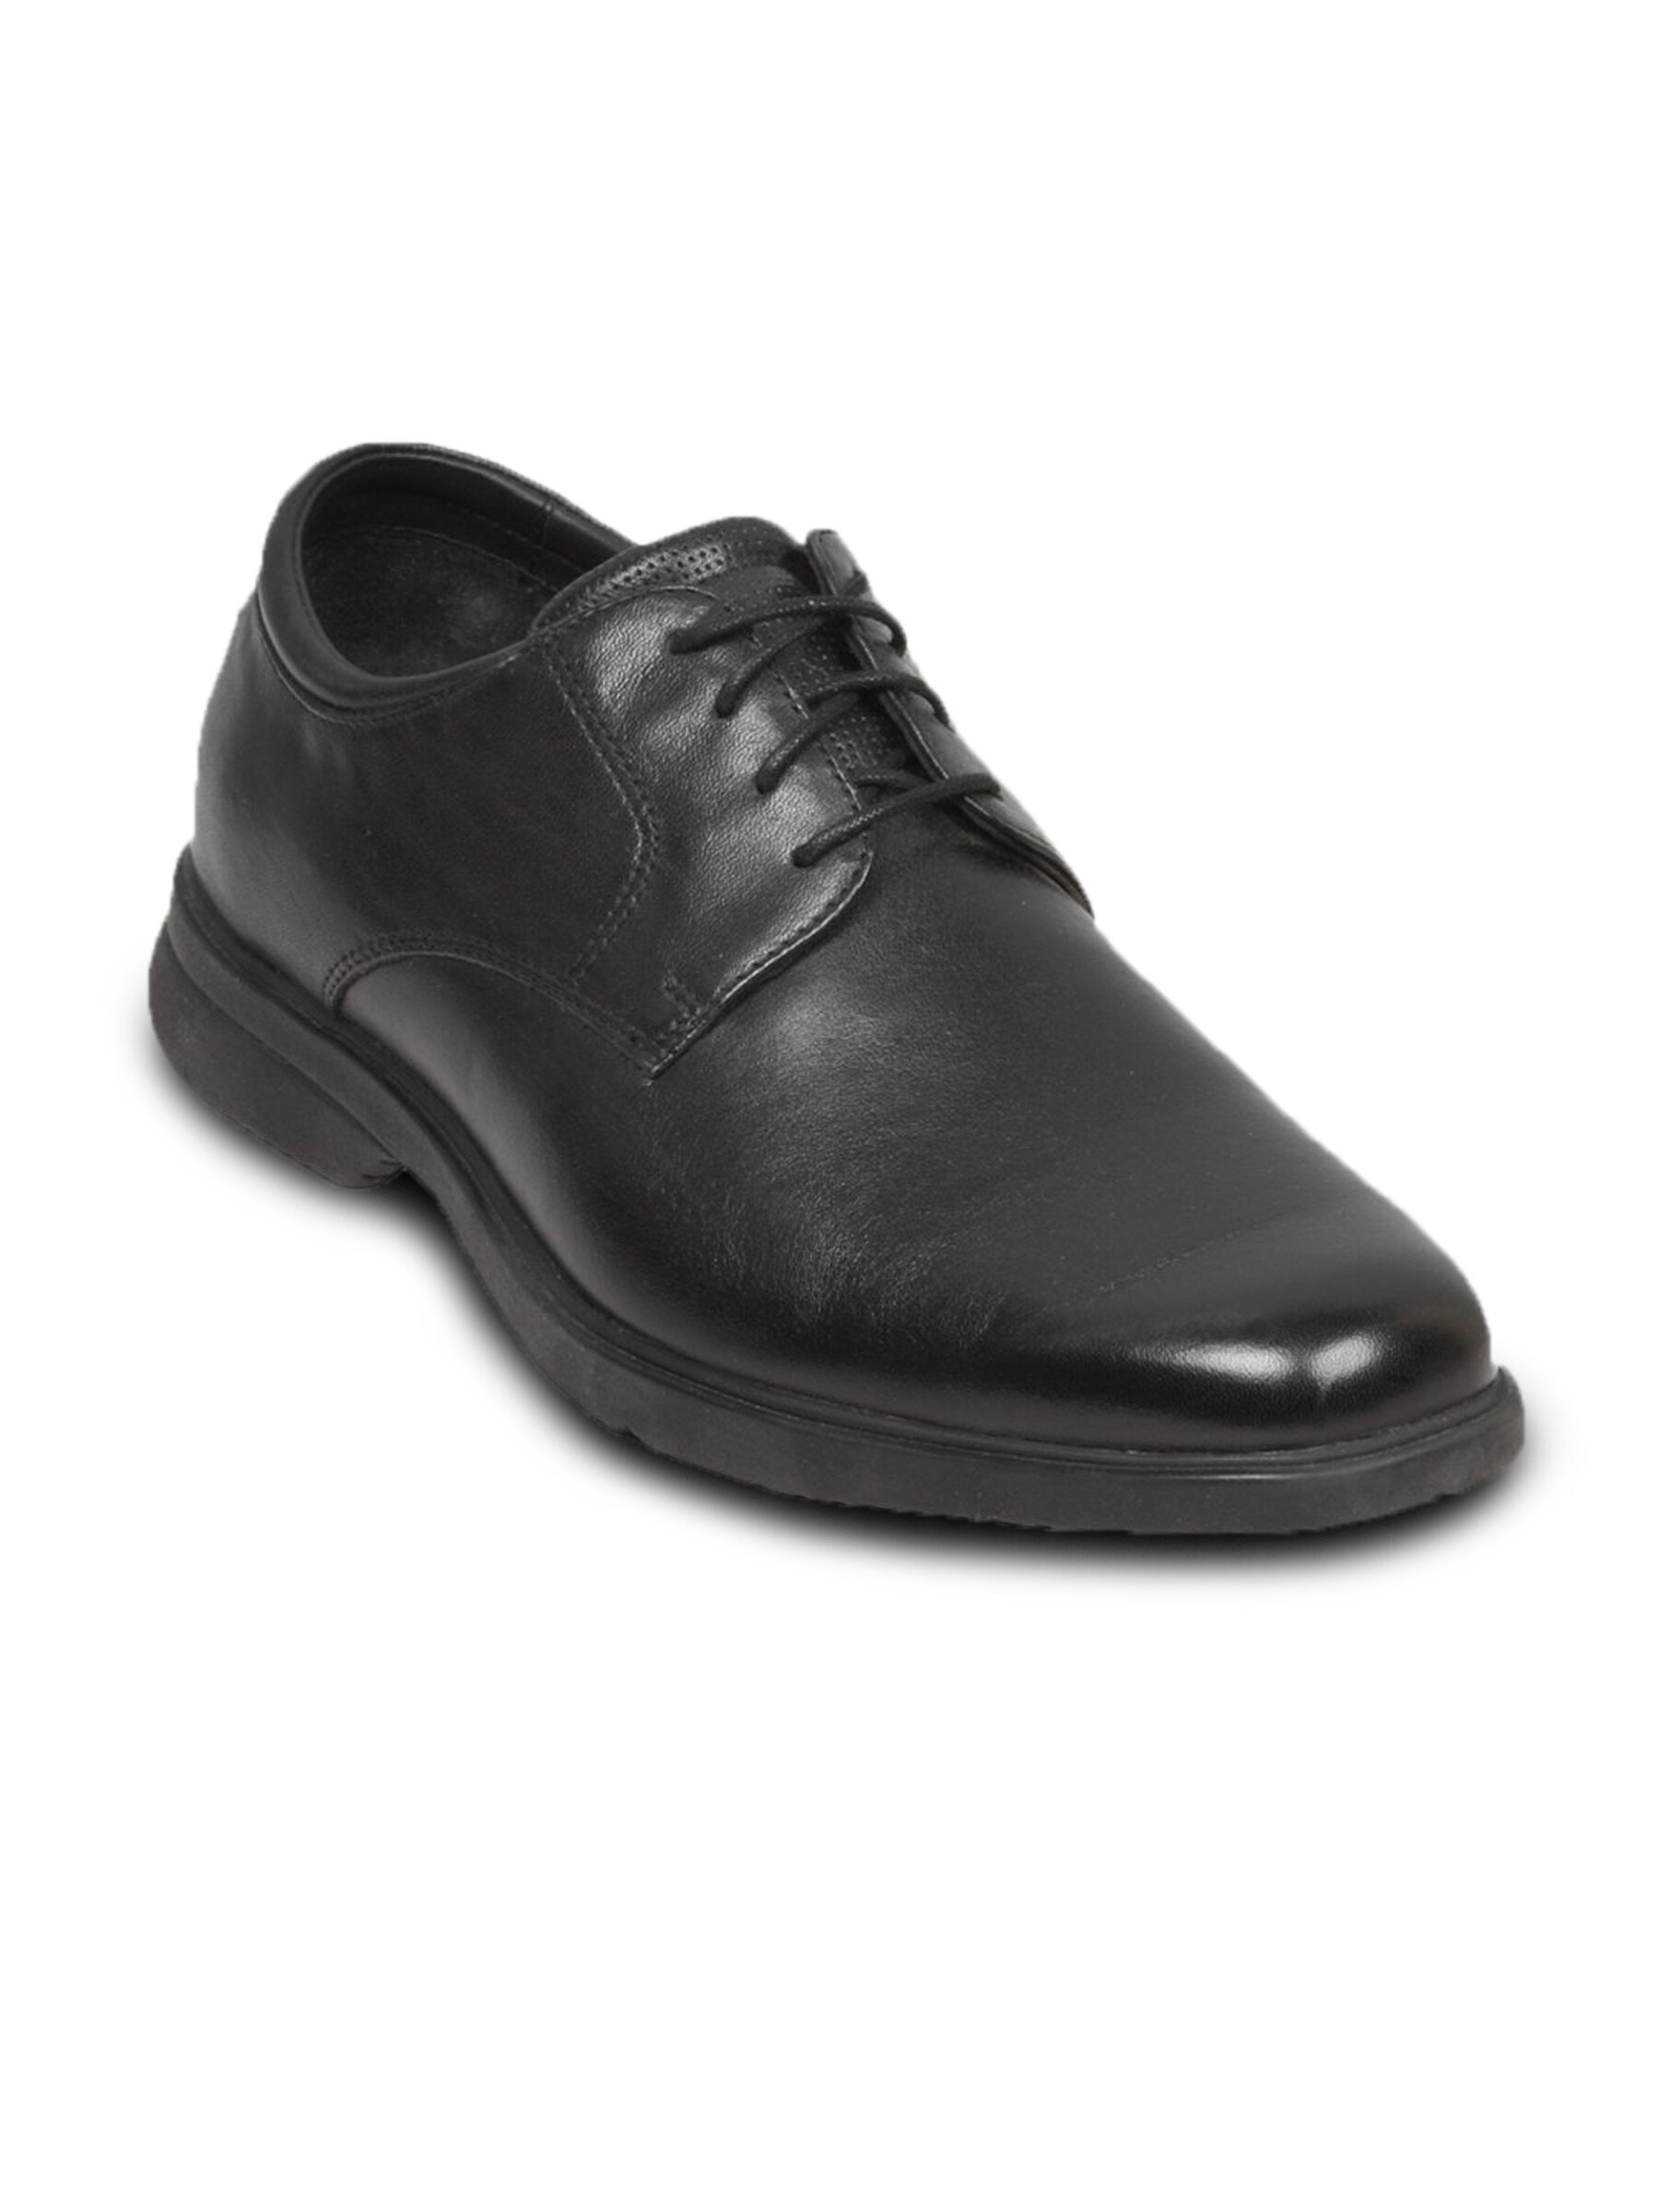 Rockport Men's Allander Black Shoe